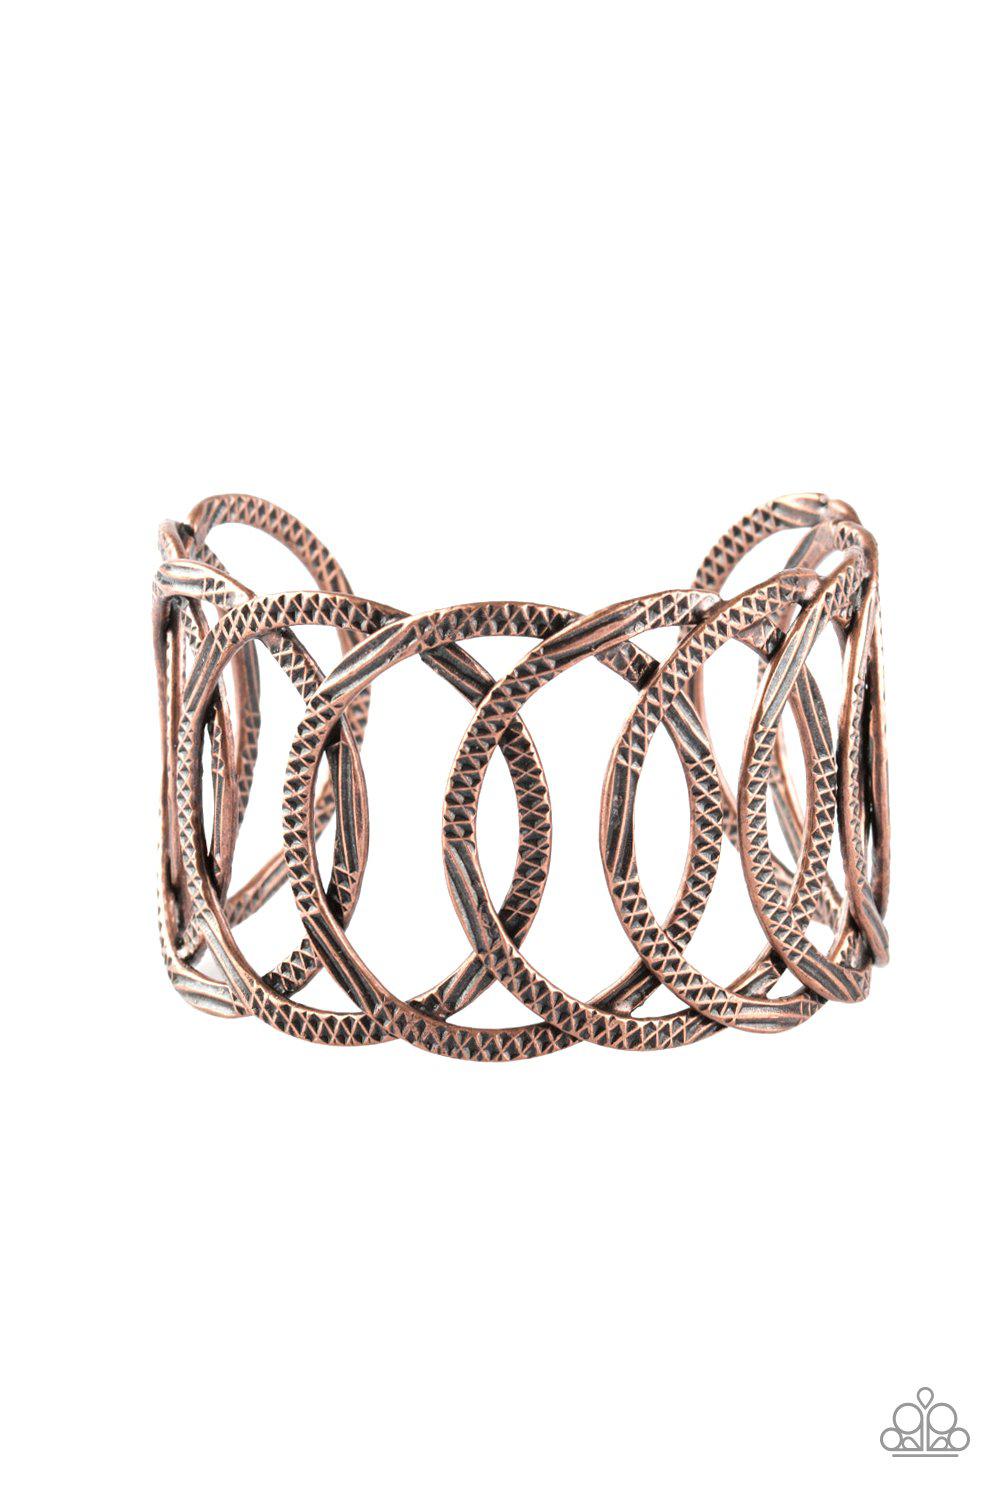 Circa de Contender Copper Cuff Bracelet - Paparazzi Accessories-CarasShop.com - $5 Jewelry by Cara Jewels